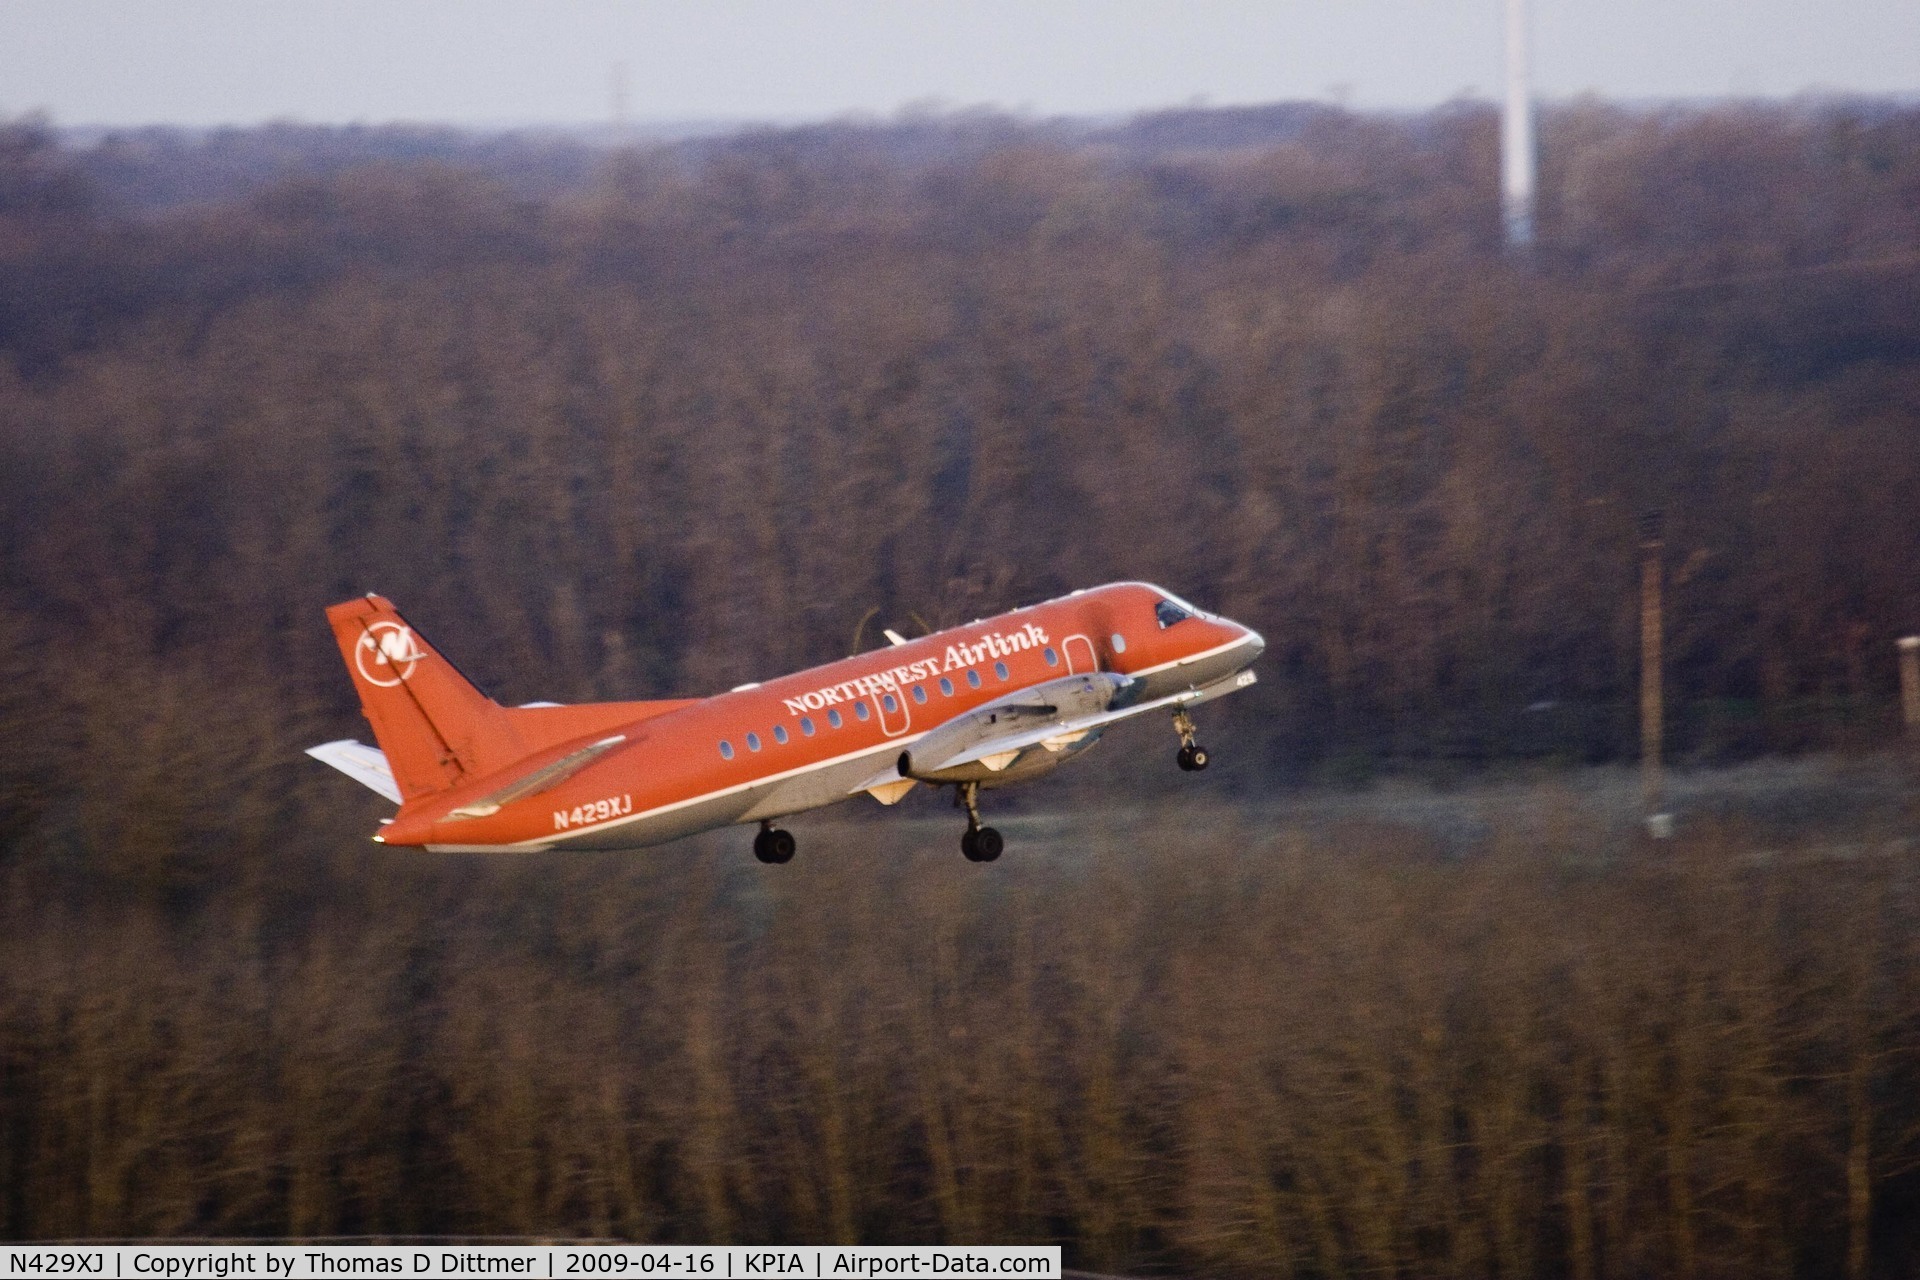 N429XJ, 1997 Saab 340B C/N 340B-429, Northwest Airlink (N429XJ) climbing out